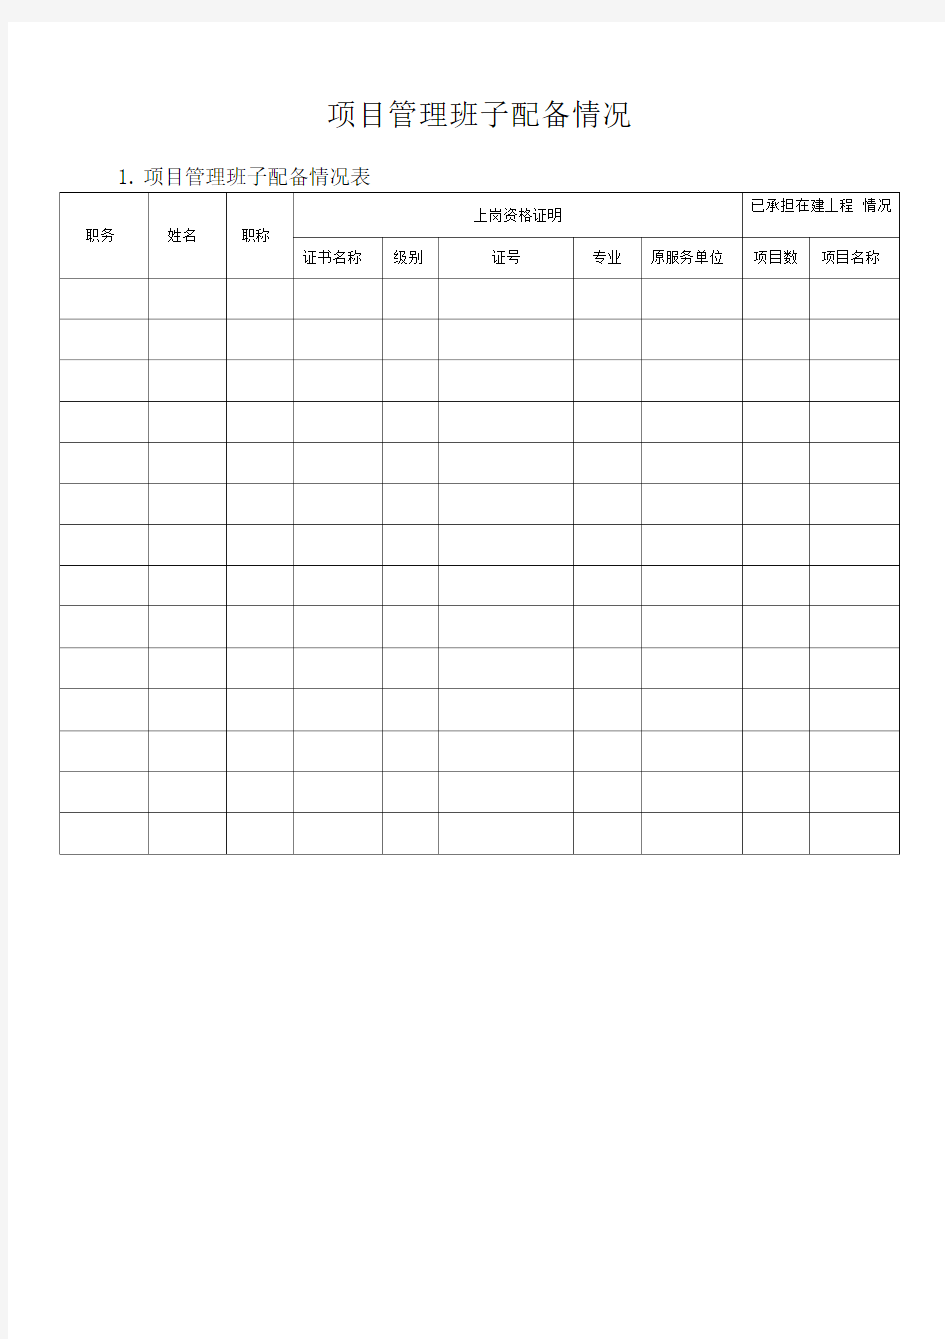 项目管理班子人员配备表及相关说明